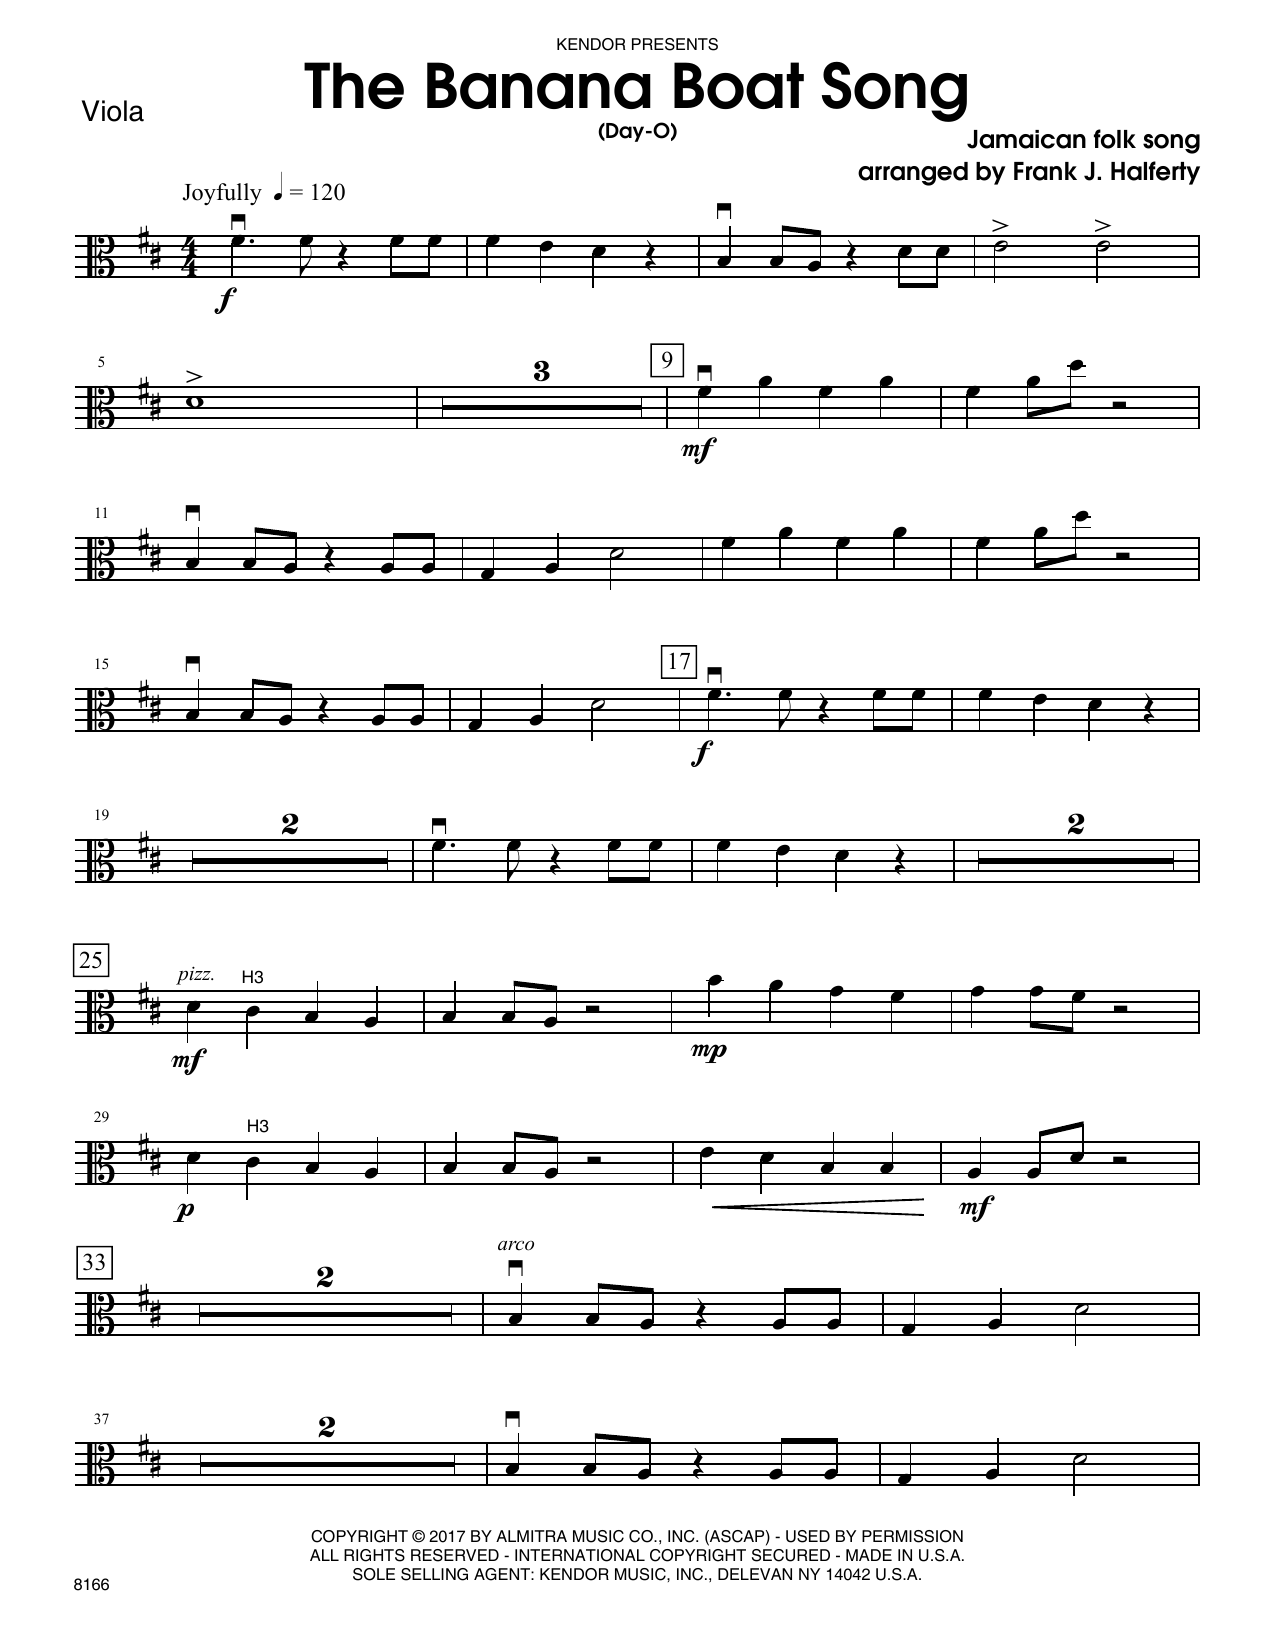 Frank J. Halferty Banana Boat Song, The (Day-O) - Viola sheet music notes and chords. Download Printable PDF.